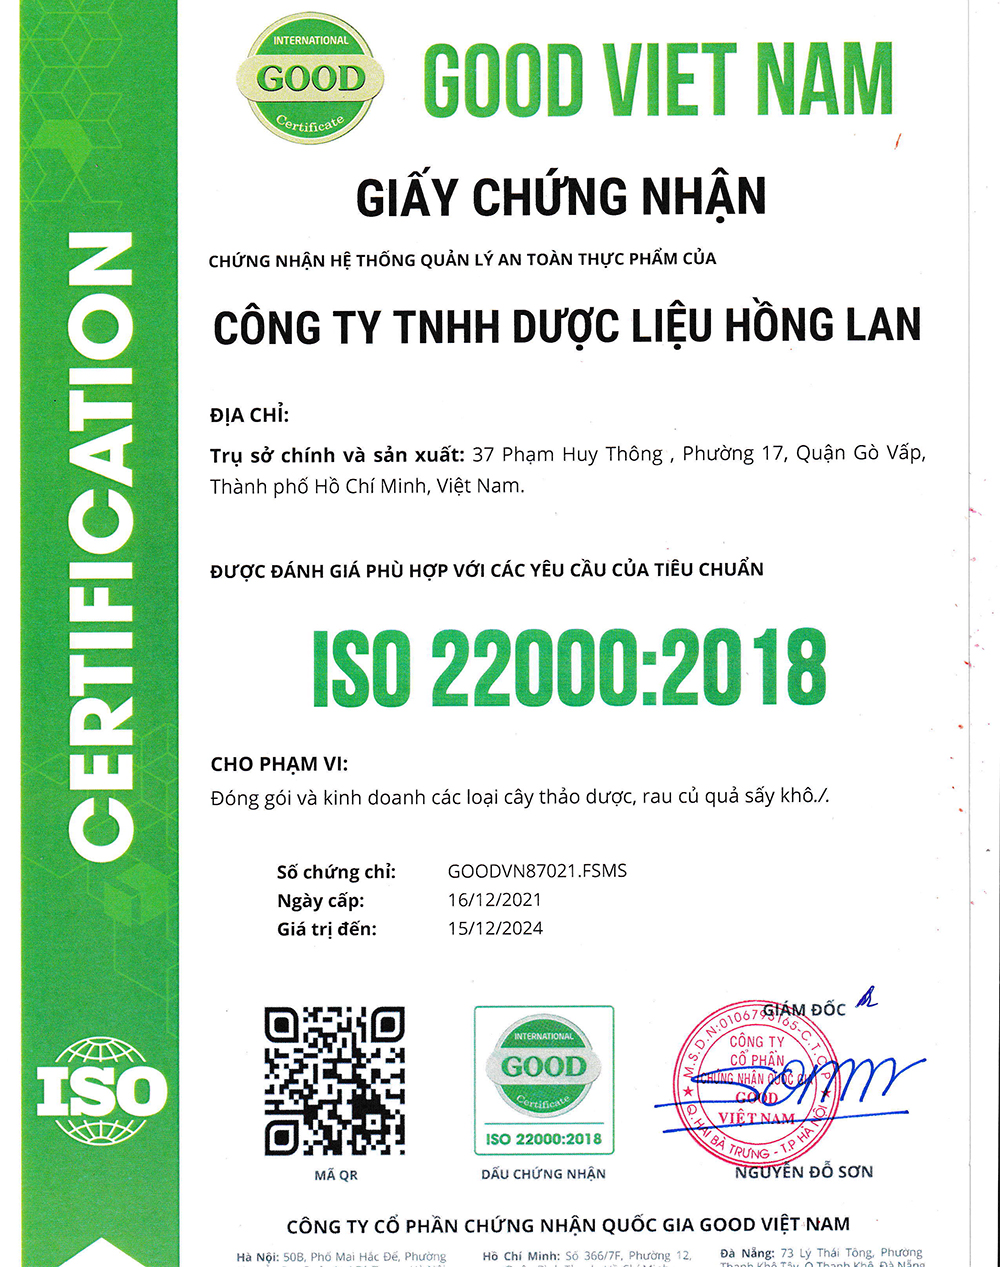 Trà túi lọc Trái Khổ Qua Rừng được sản xuất bởi Công ty TNHH Dược Liệu Hồng Lan theo hệ thống quản lý an toàn thực phẩm ISO 22000:2018 được cấp bởi công ty cổ phần chứng nhận Quốc Gia Good Việt Nam (Good Viet Nam Certification Joint Stock Company)